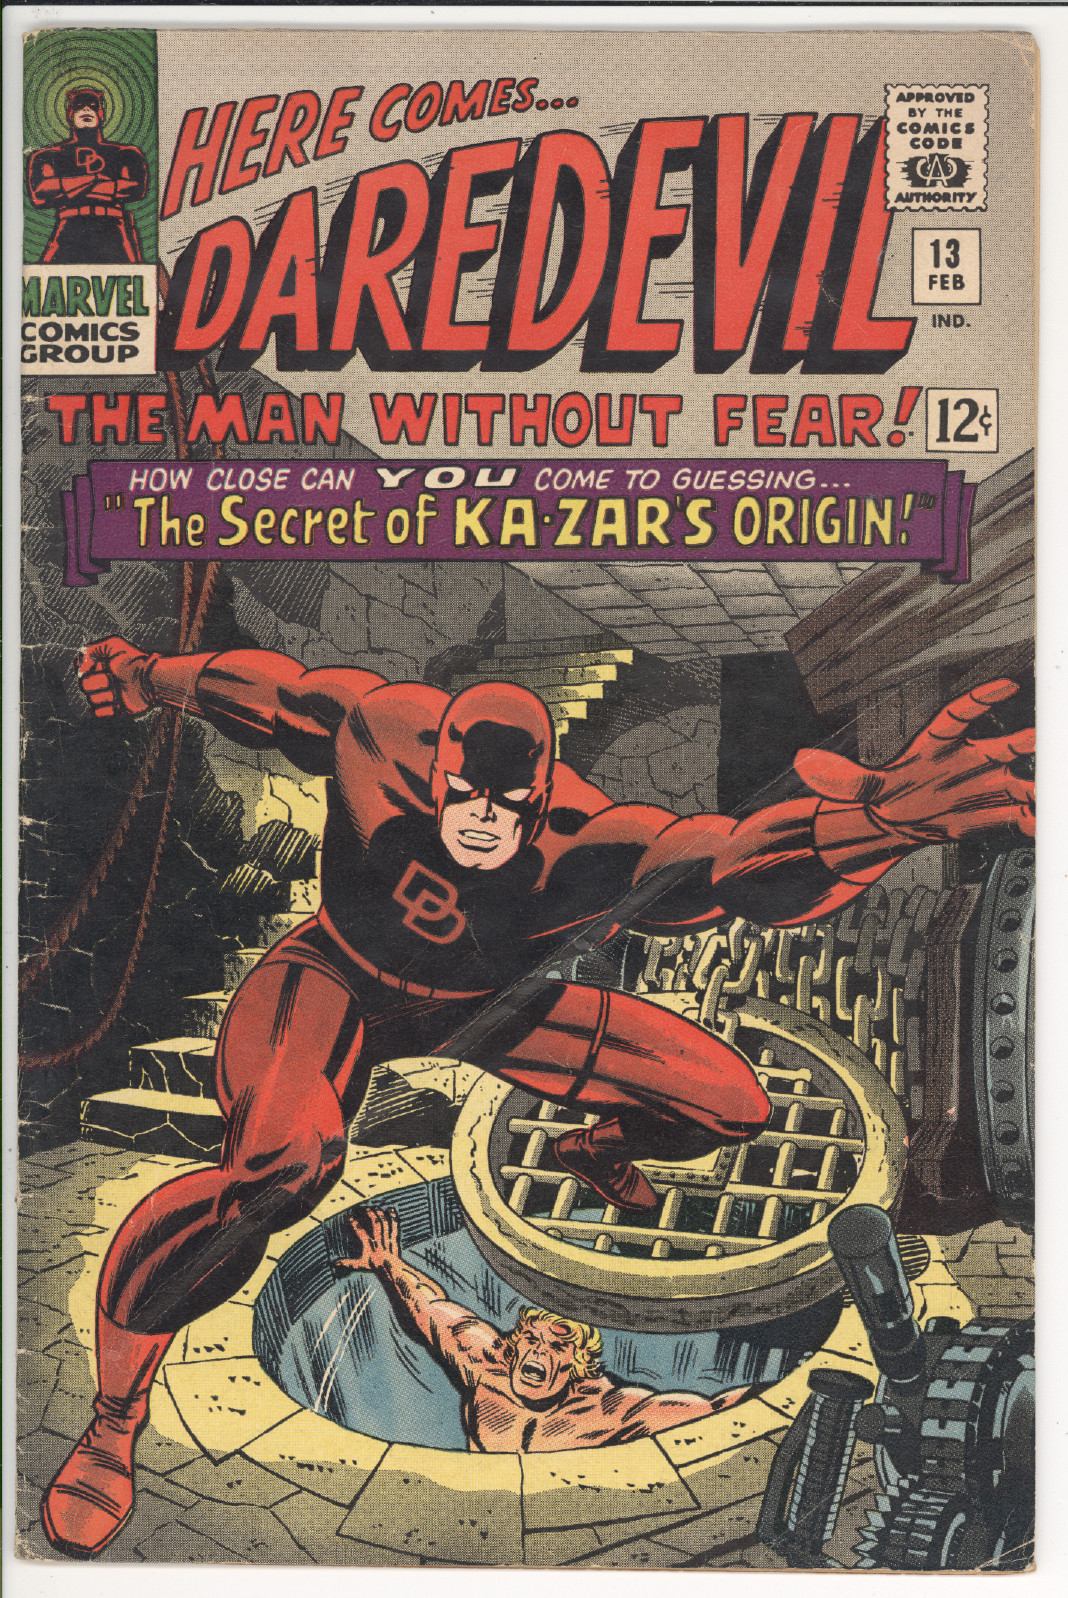 Daredevil #13 front